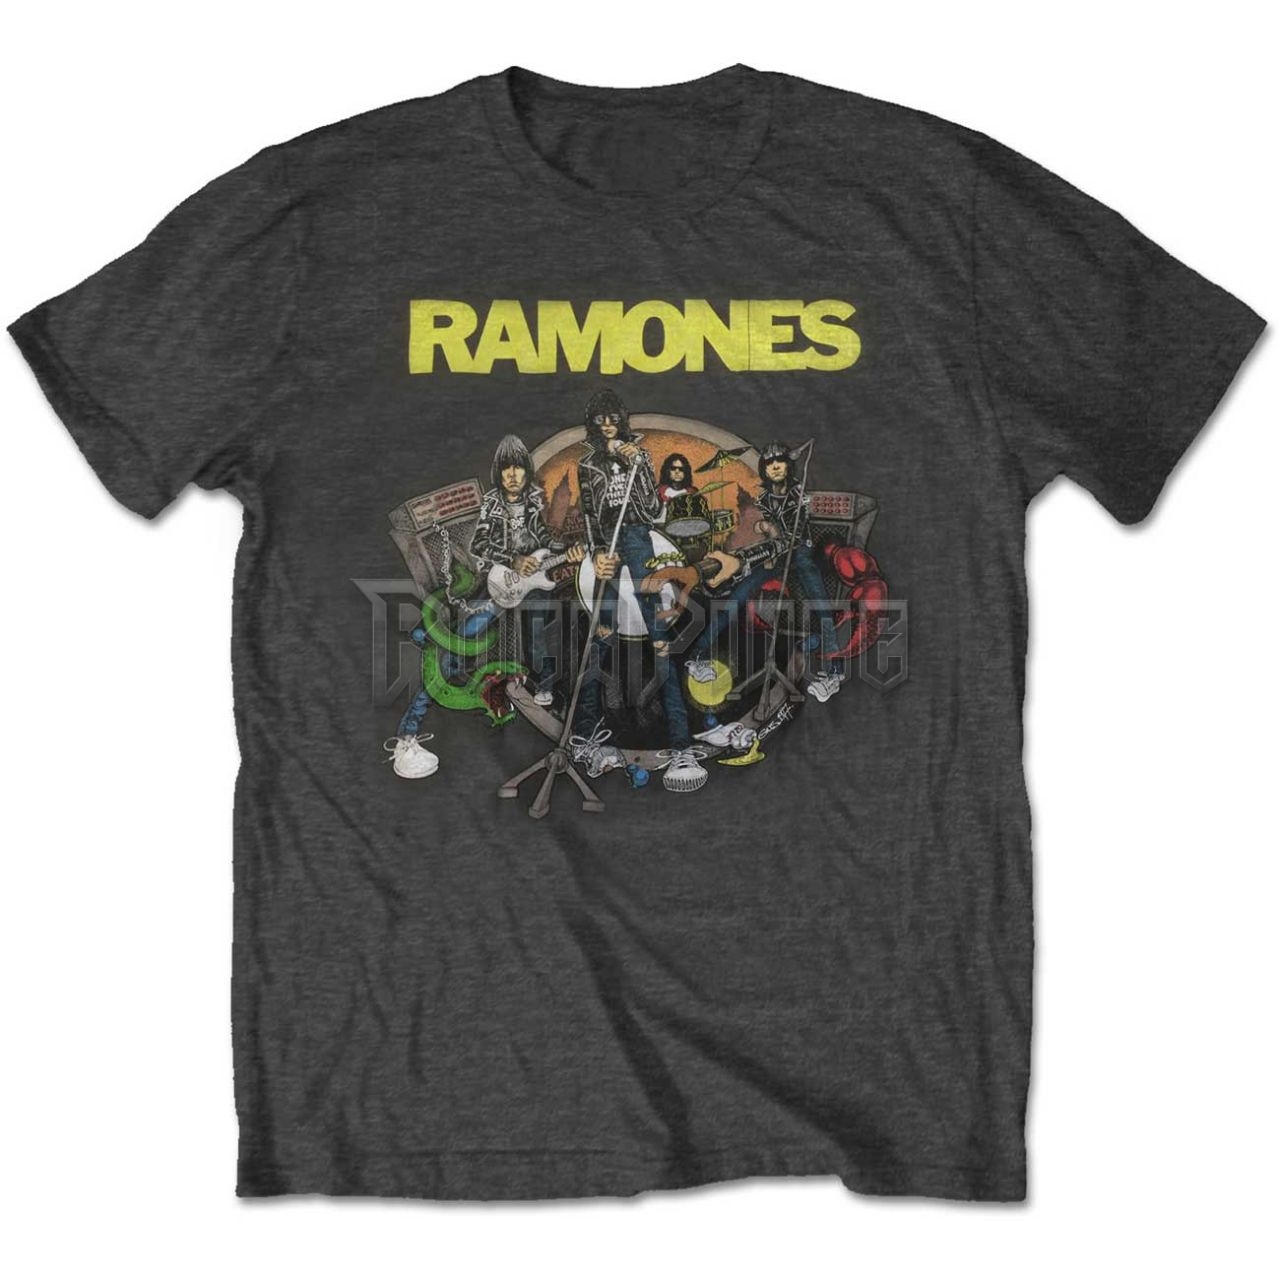 Ramones - Road to Ruin - unisex póló - RATS43MB